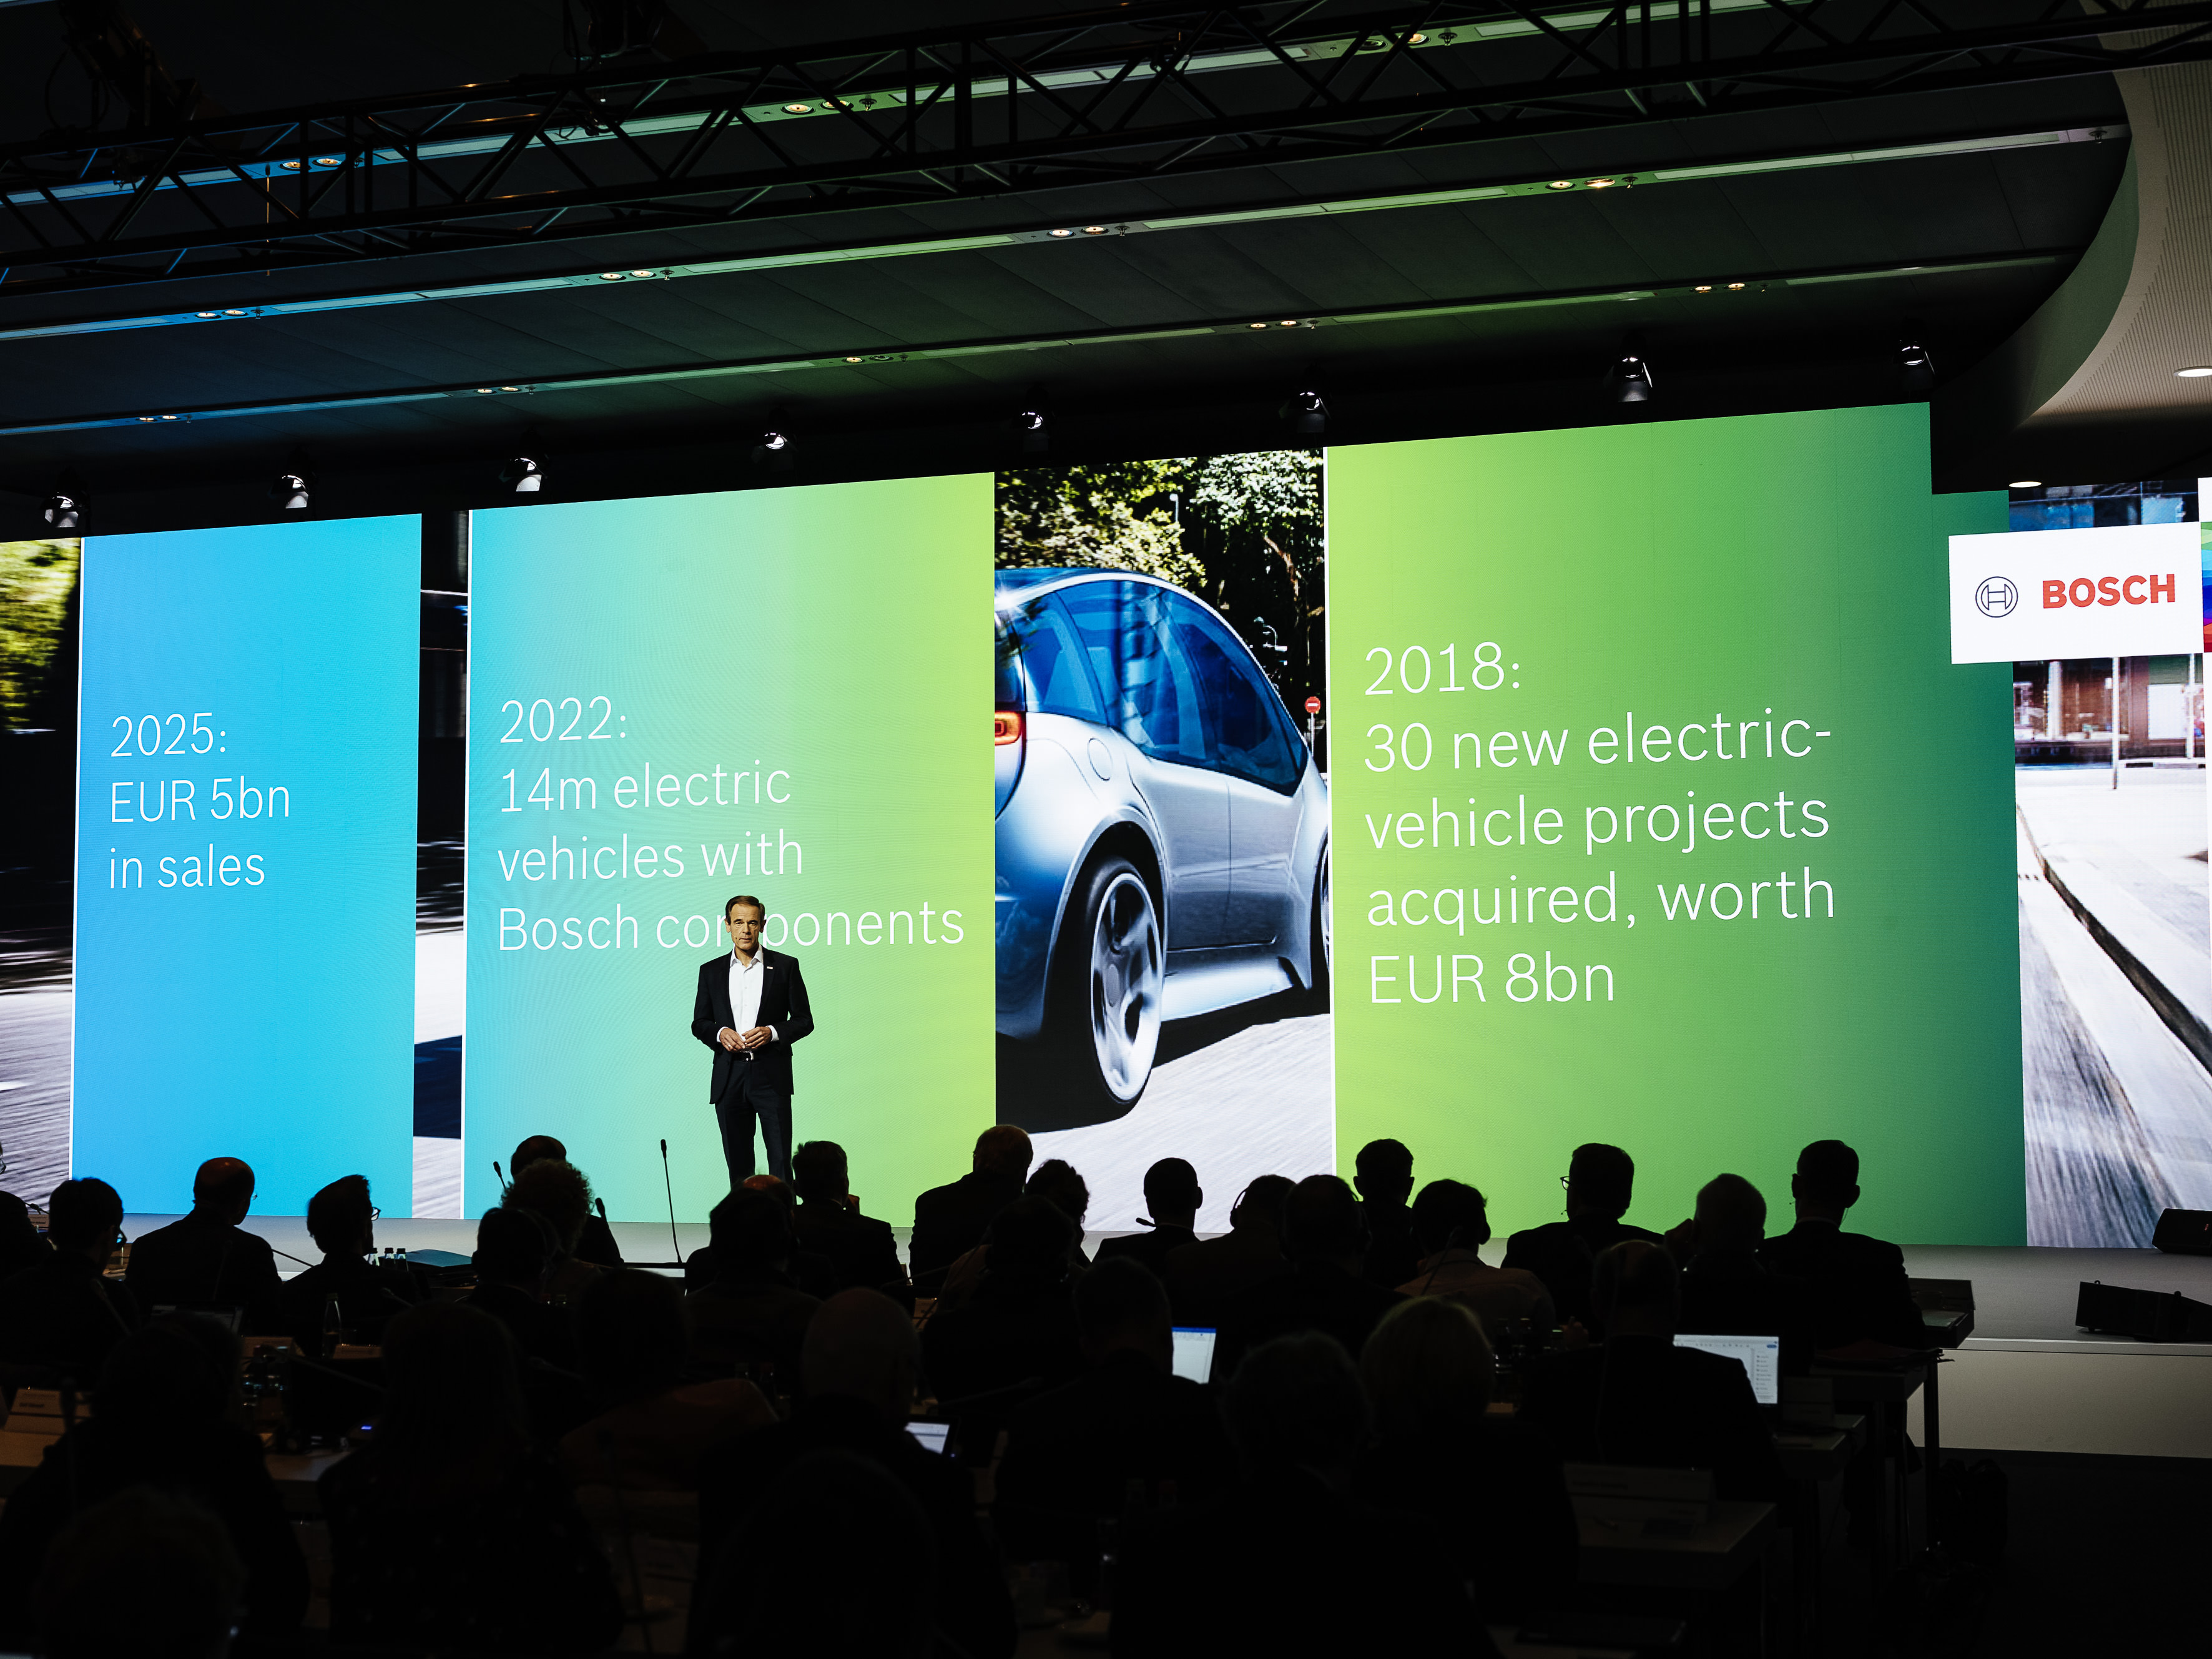 Bilanzpressekonferenz 2019: Bosch ab 2020 weltweit CO₂-neutral